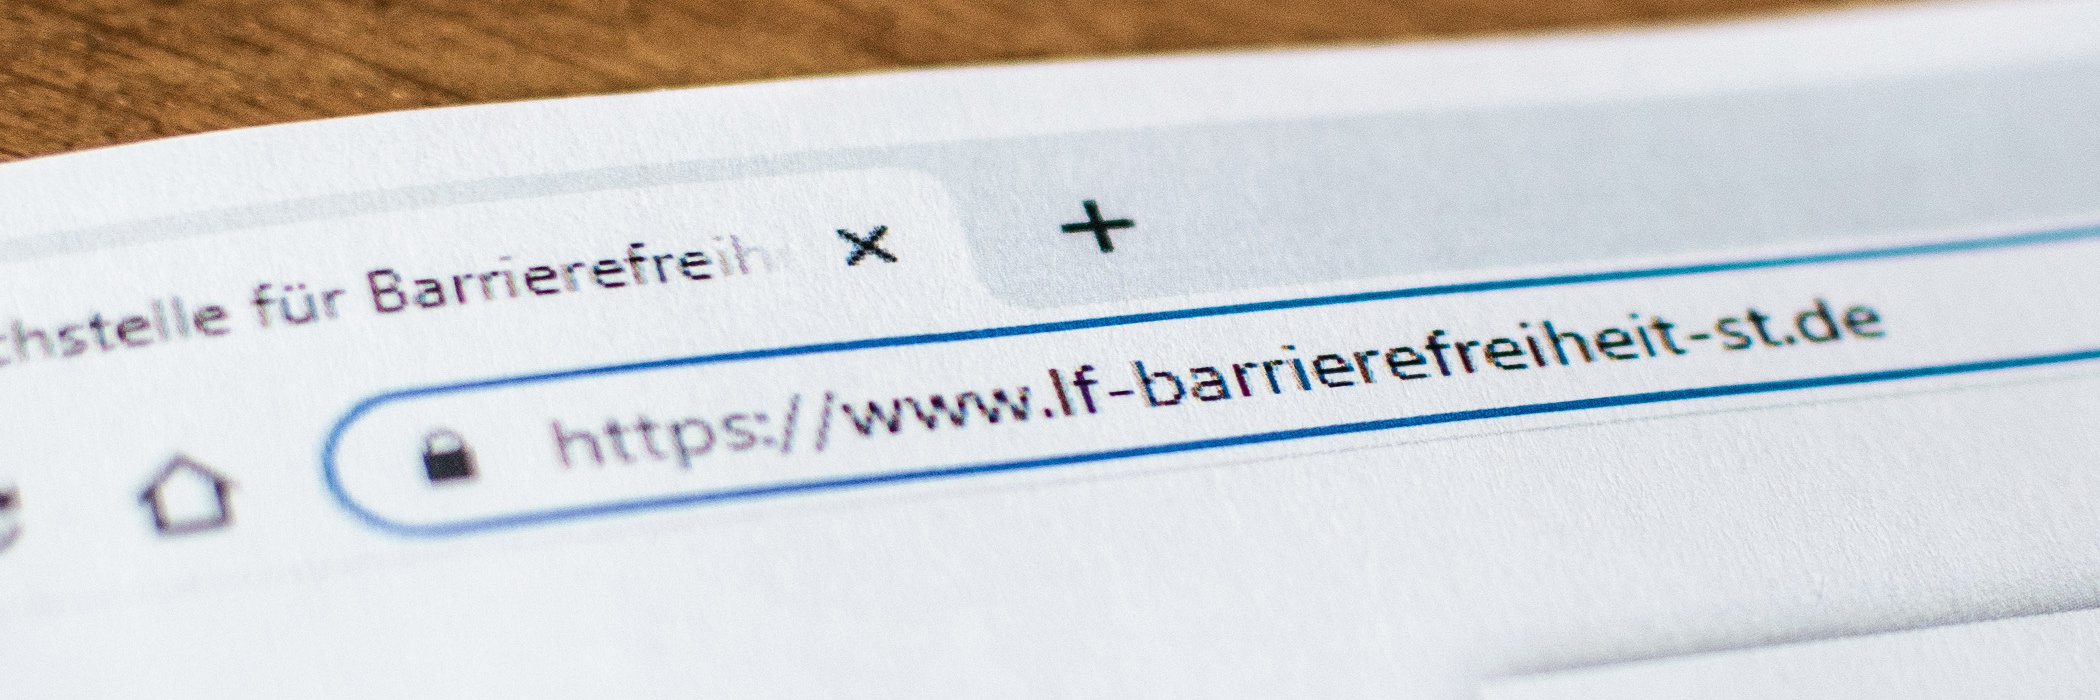 ausgedrucktes Papier, welches die Adresszeile mit folgender Internet-Adresse in einem Browser zeigt: www.lf-barrierefreiheit-st.de